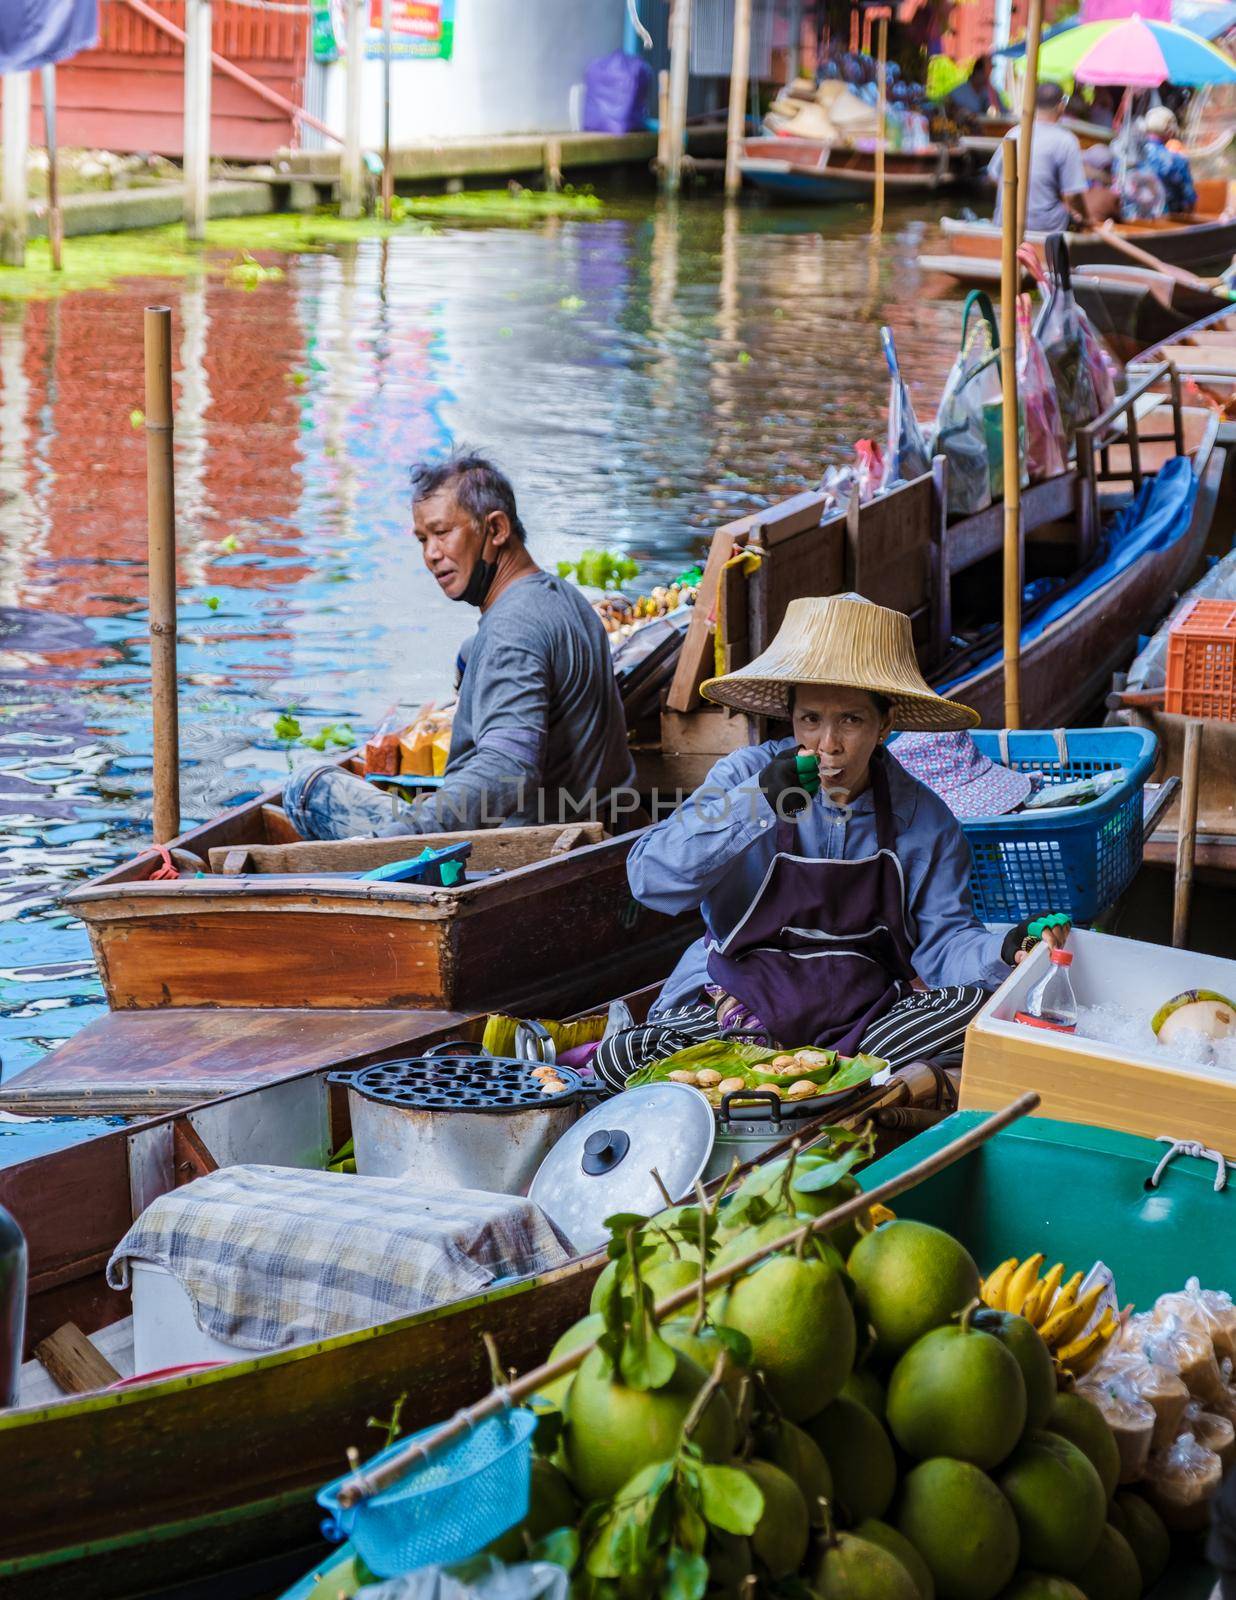 People at Damnoen saduak floating market, Bangkok Thailand. colorful floating market in Thailand